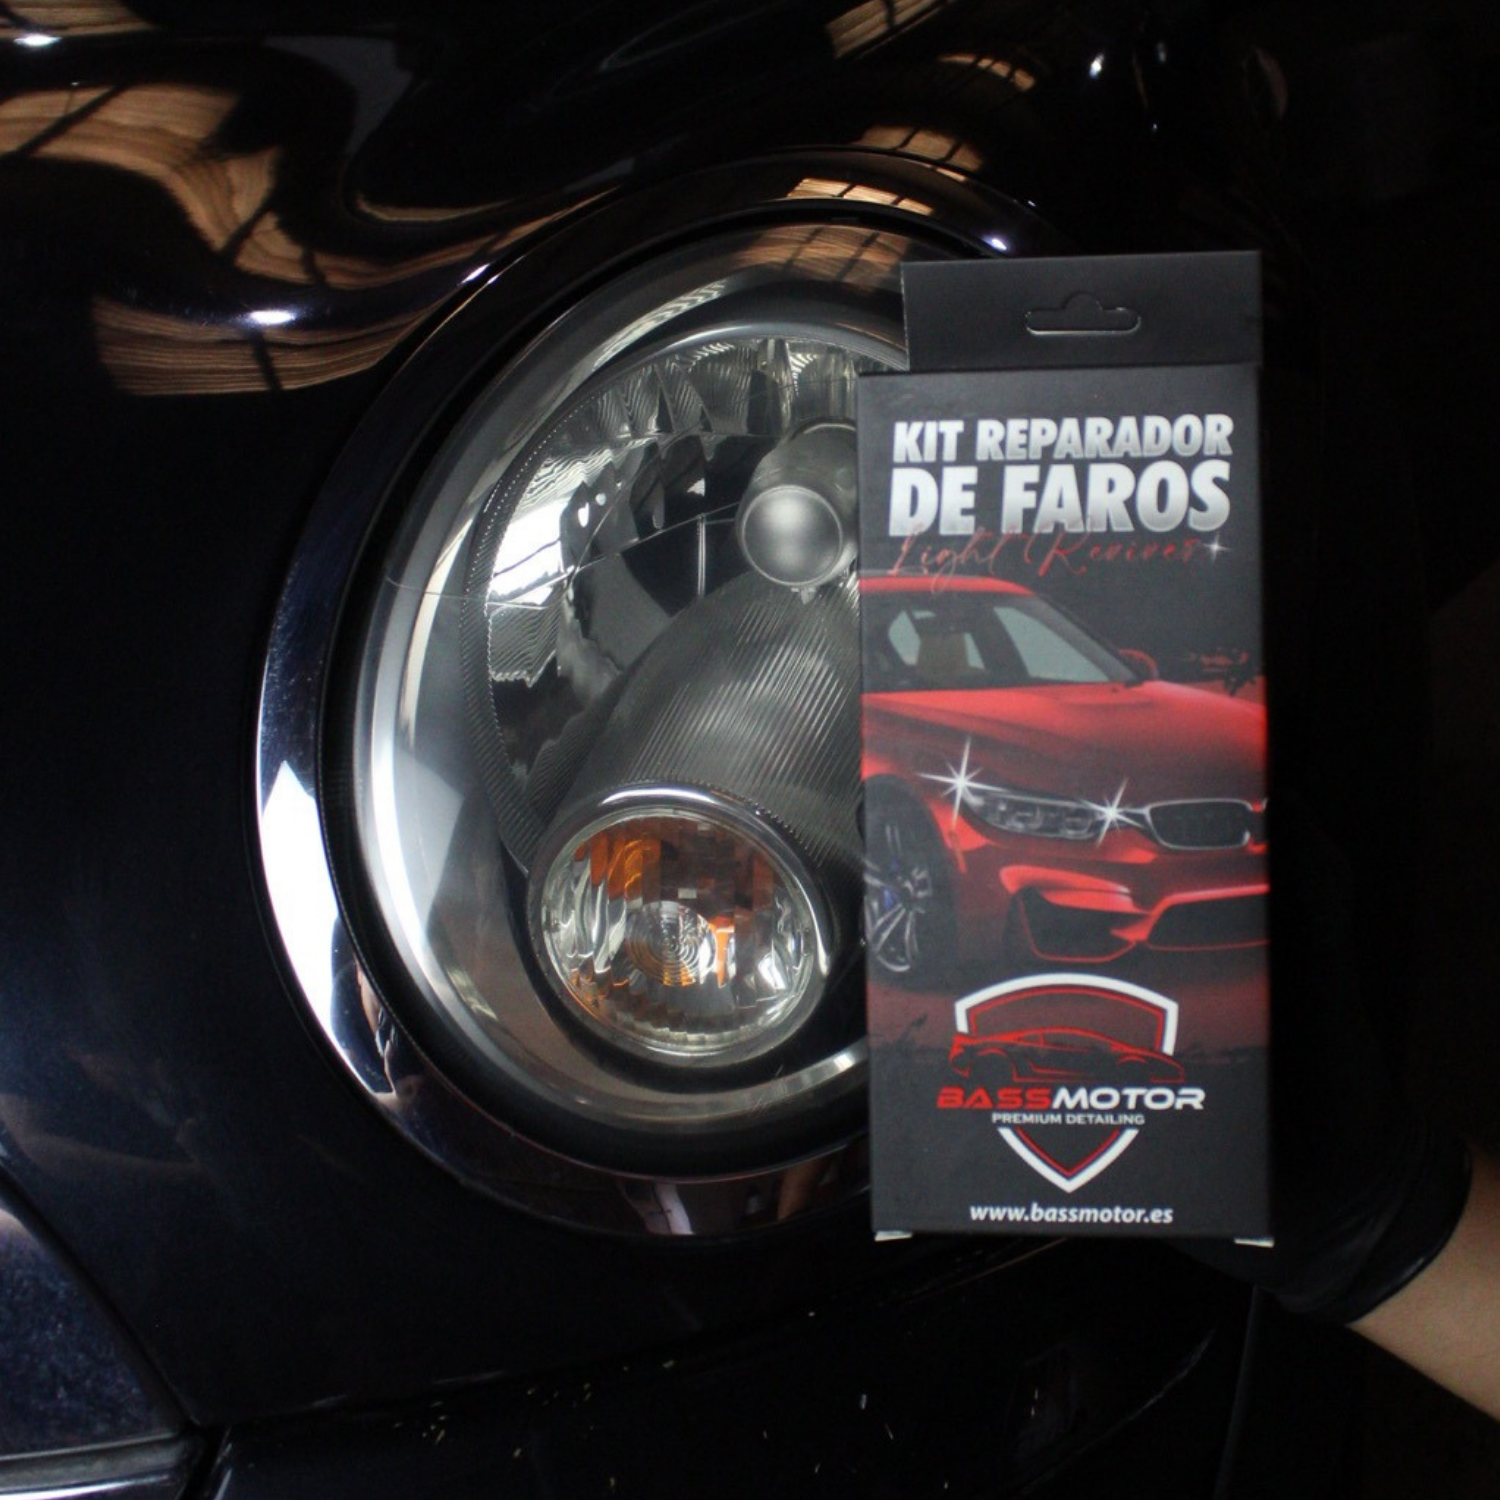 Light Reviver - Kit Reparador de Faros